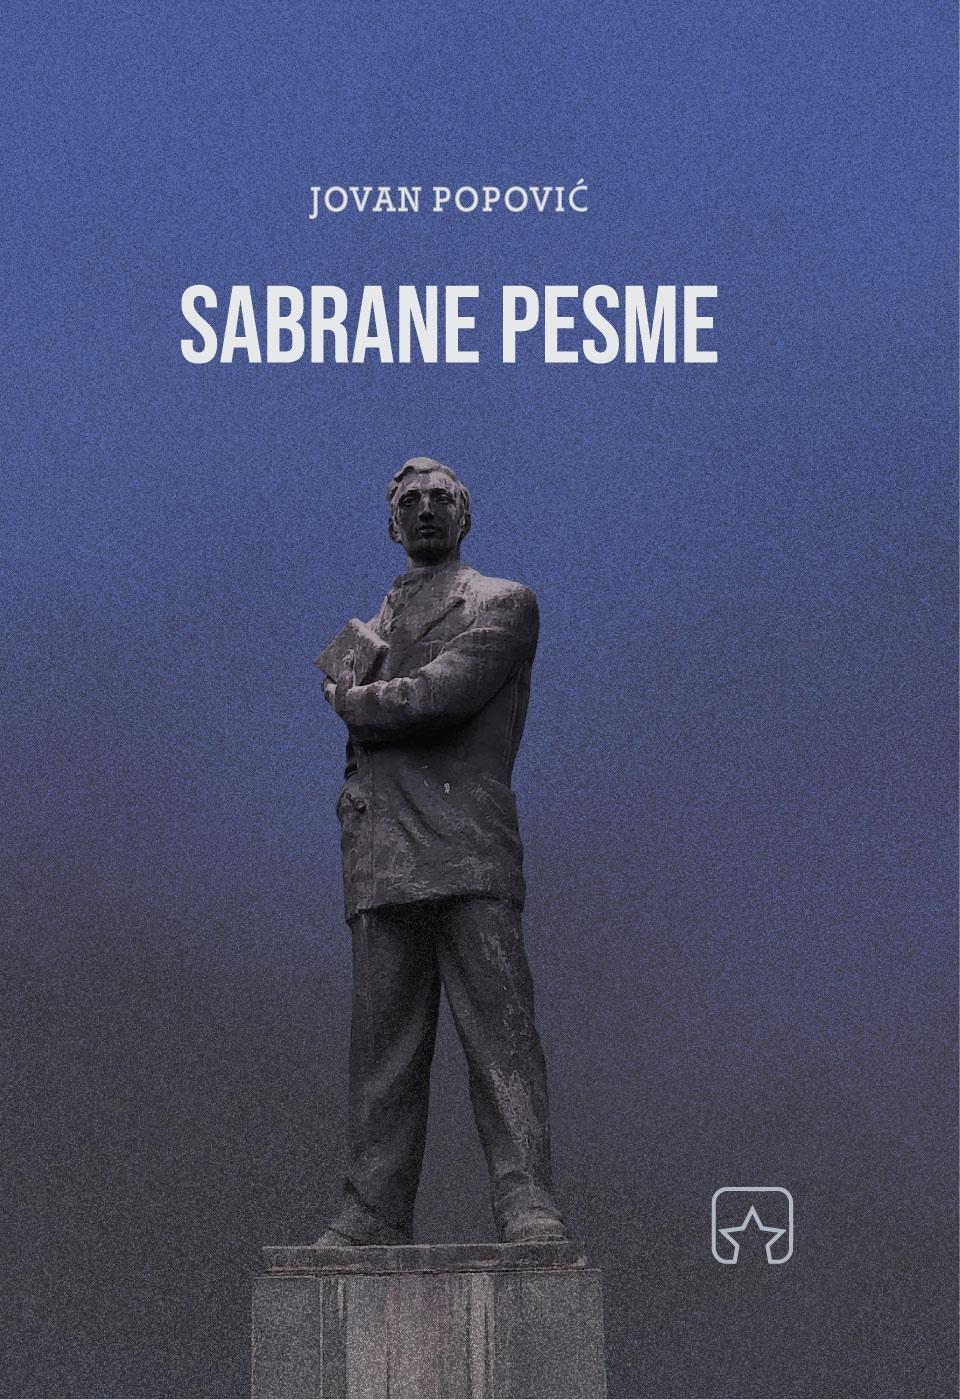 Selected image for Sabrane pesme